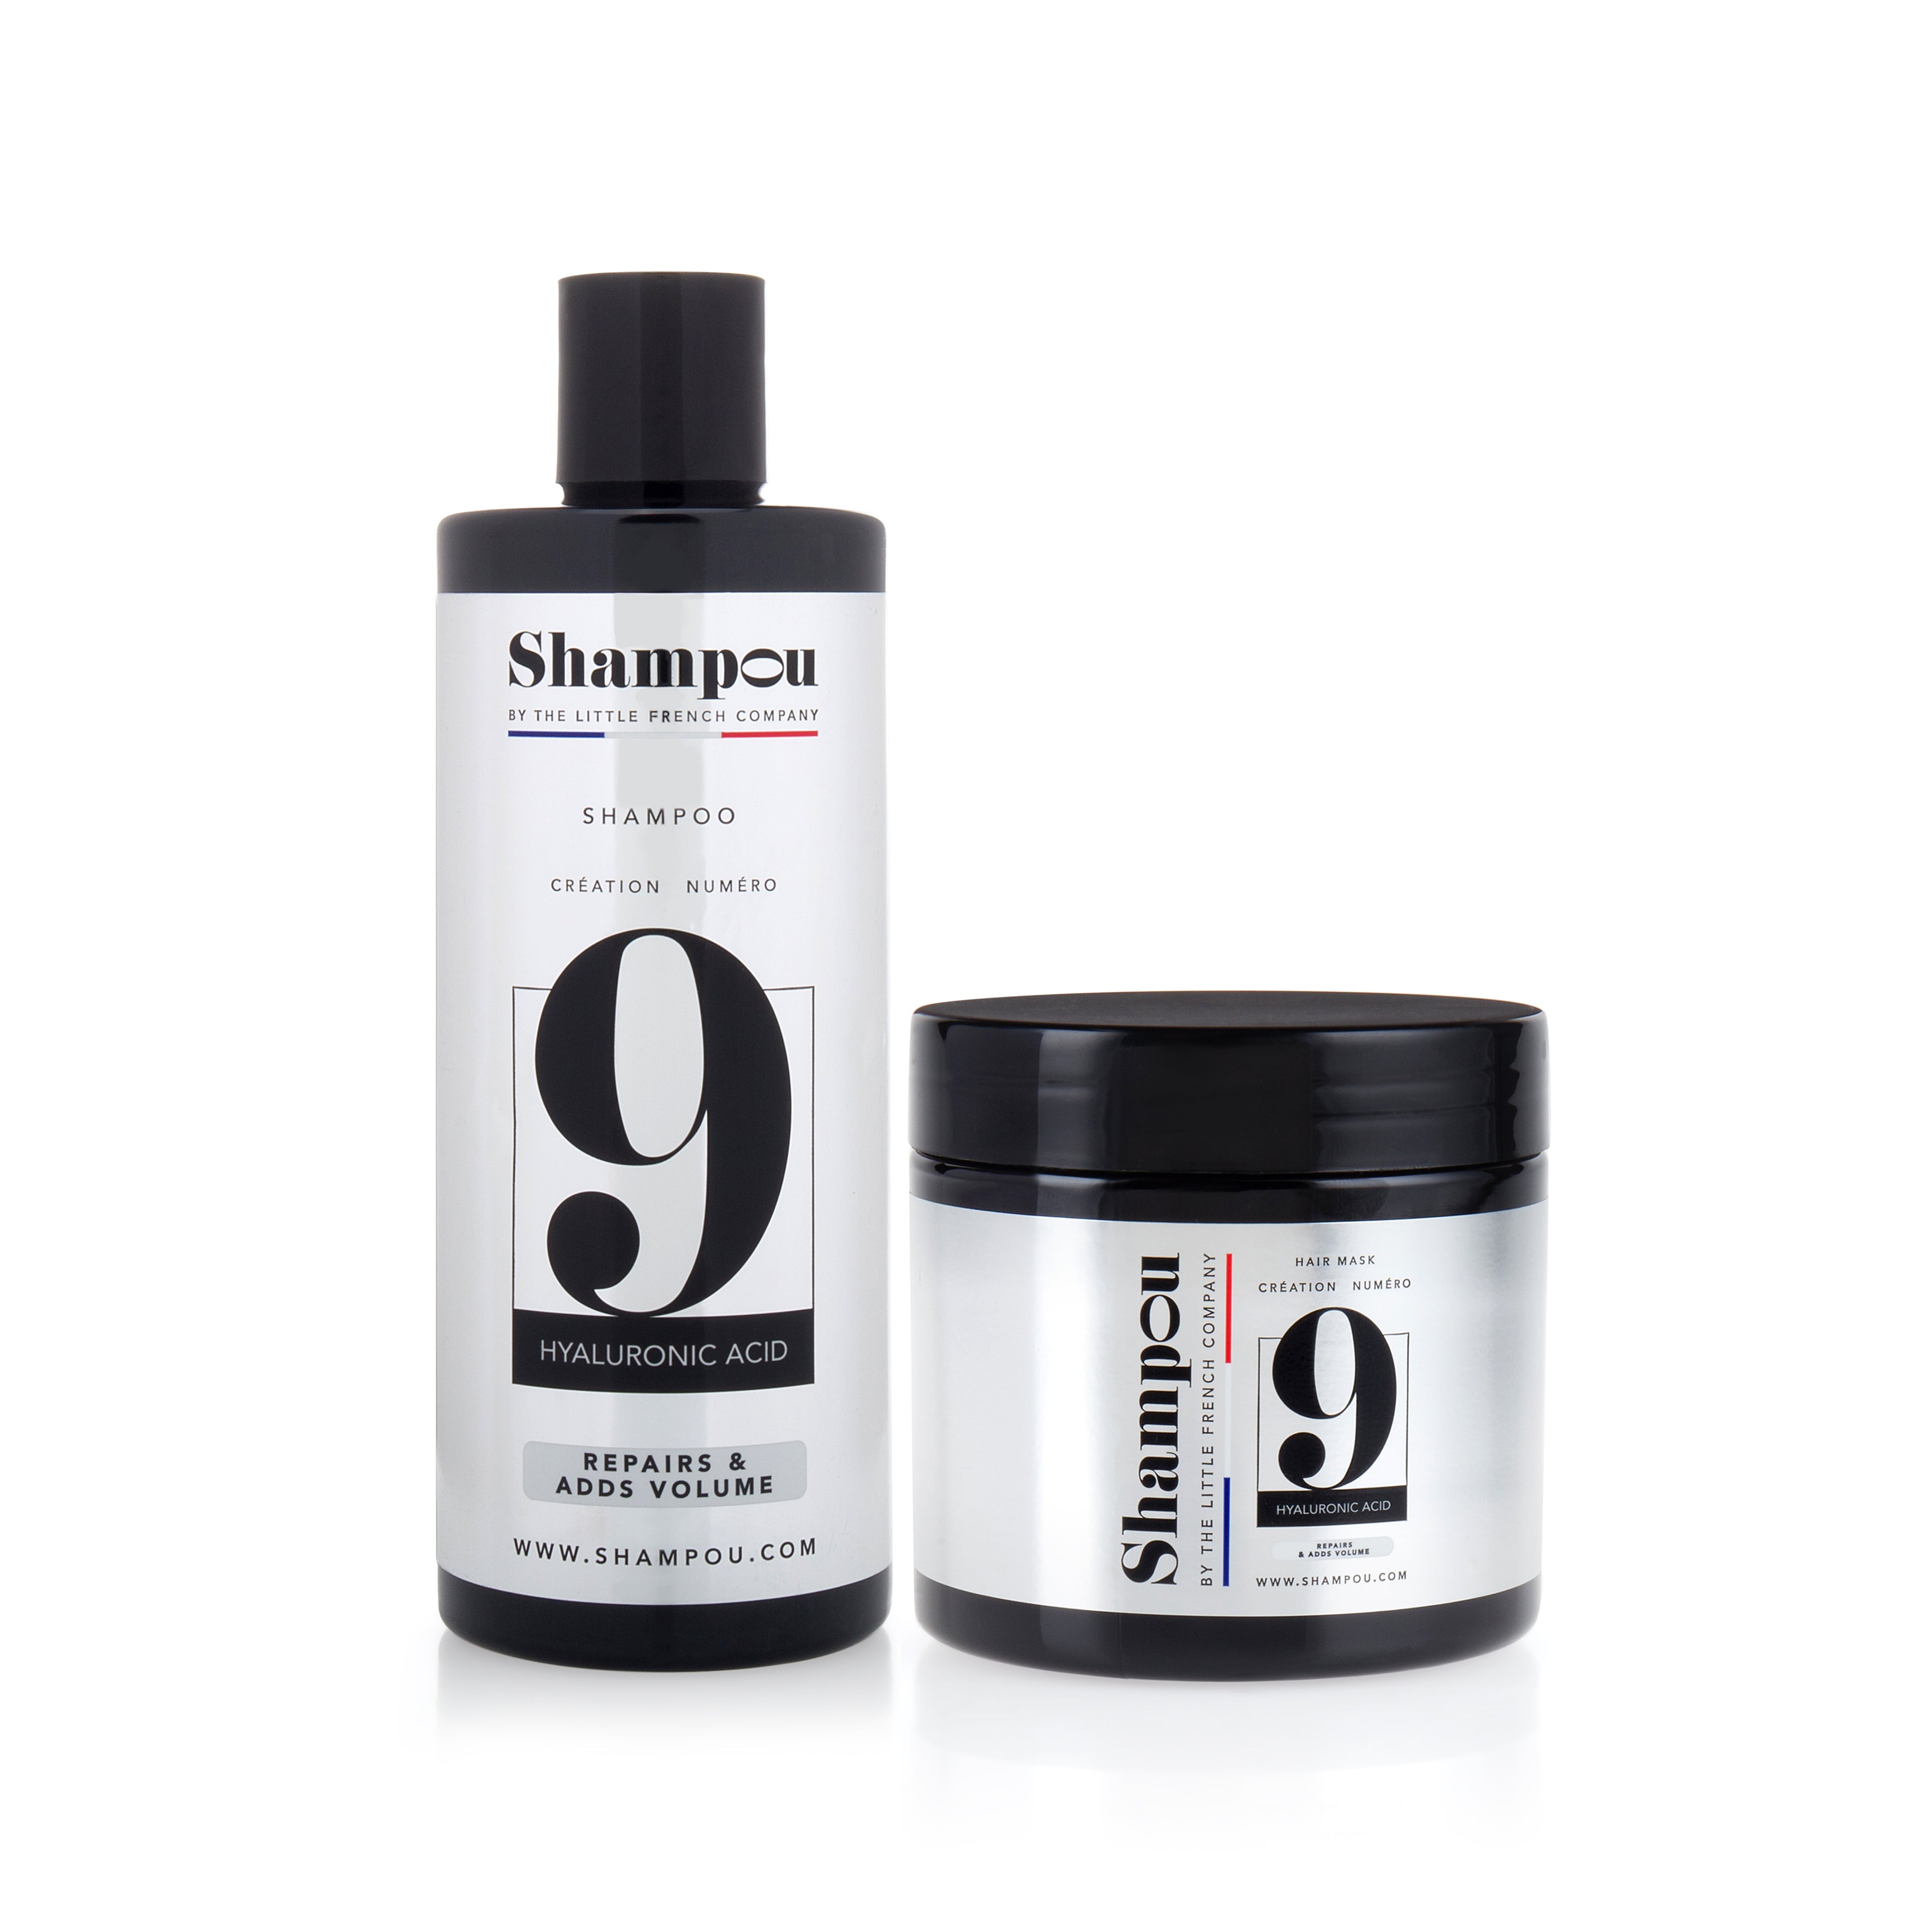 Hyaluronic Acid Range – Shampou